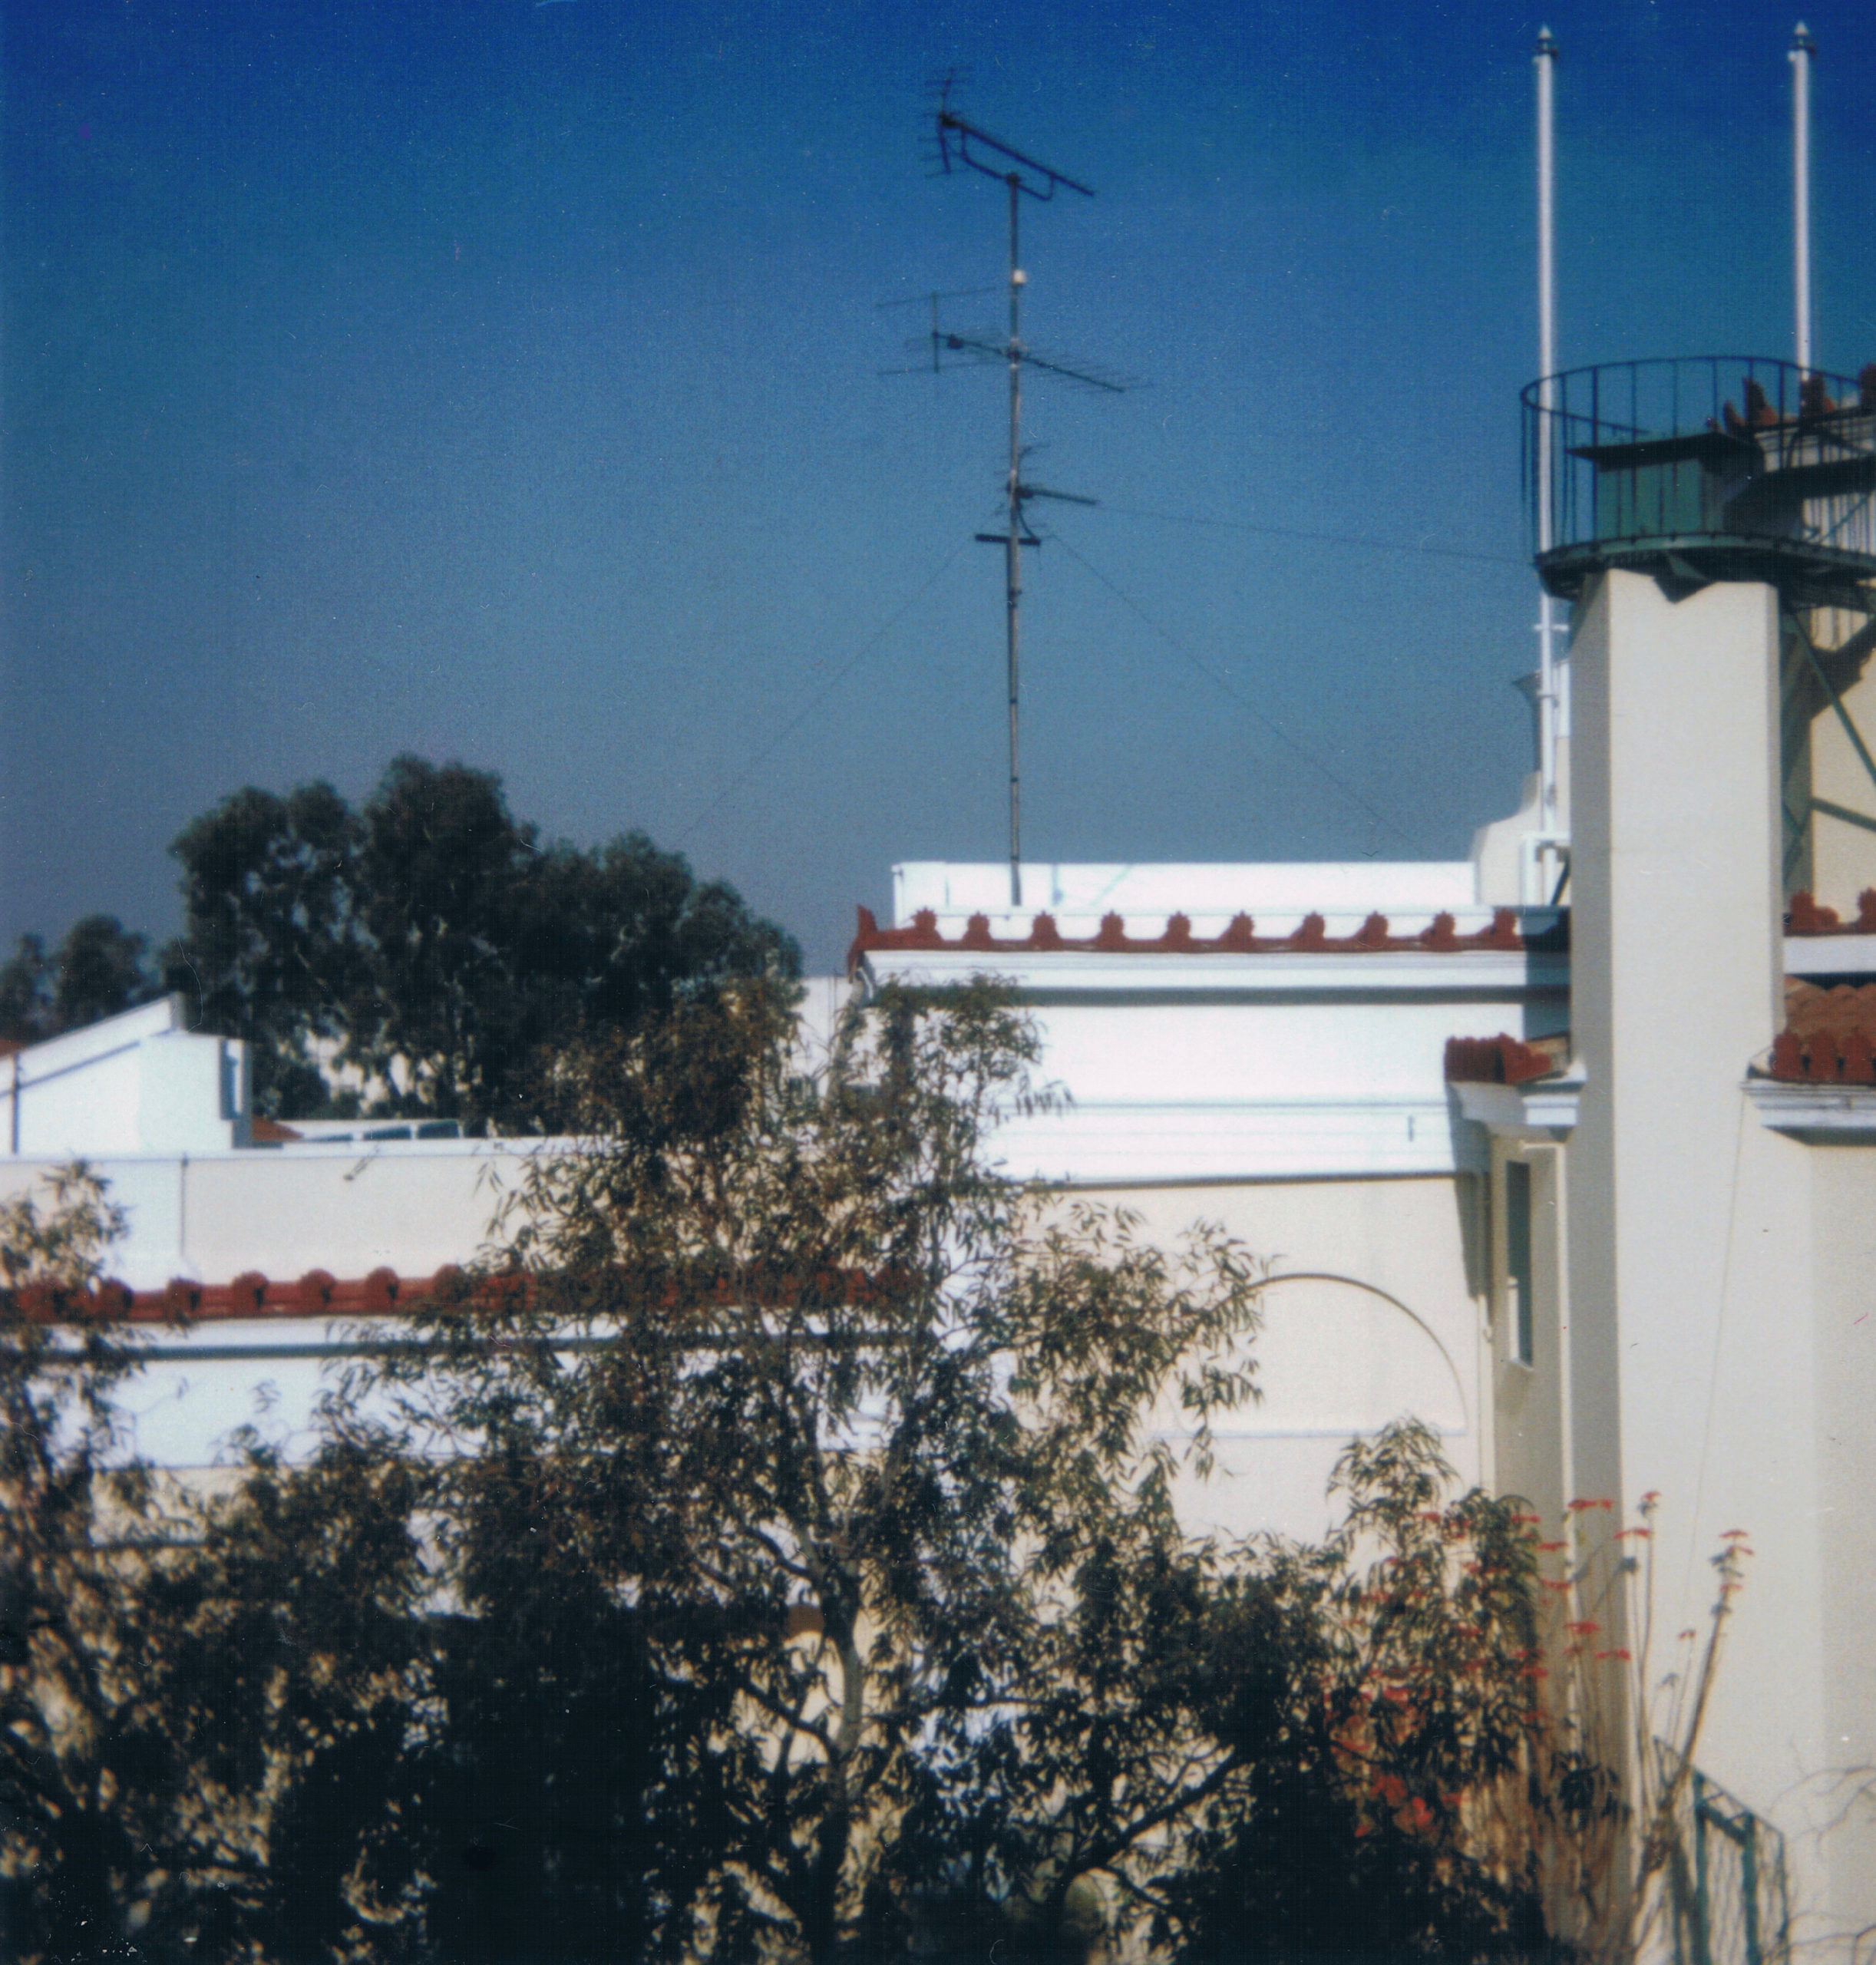 Le toit et la terrasse de la bibliothèque vus depuis la fenêtre de la chambre 16 de l’Annexe, février 1997 ©Marie-Cécile Navet